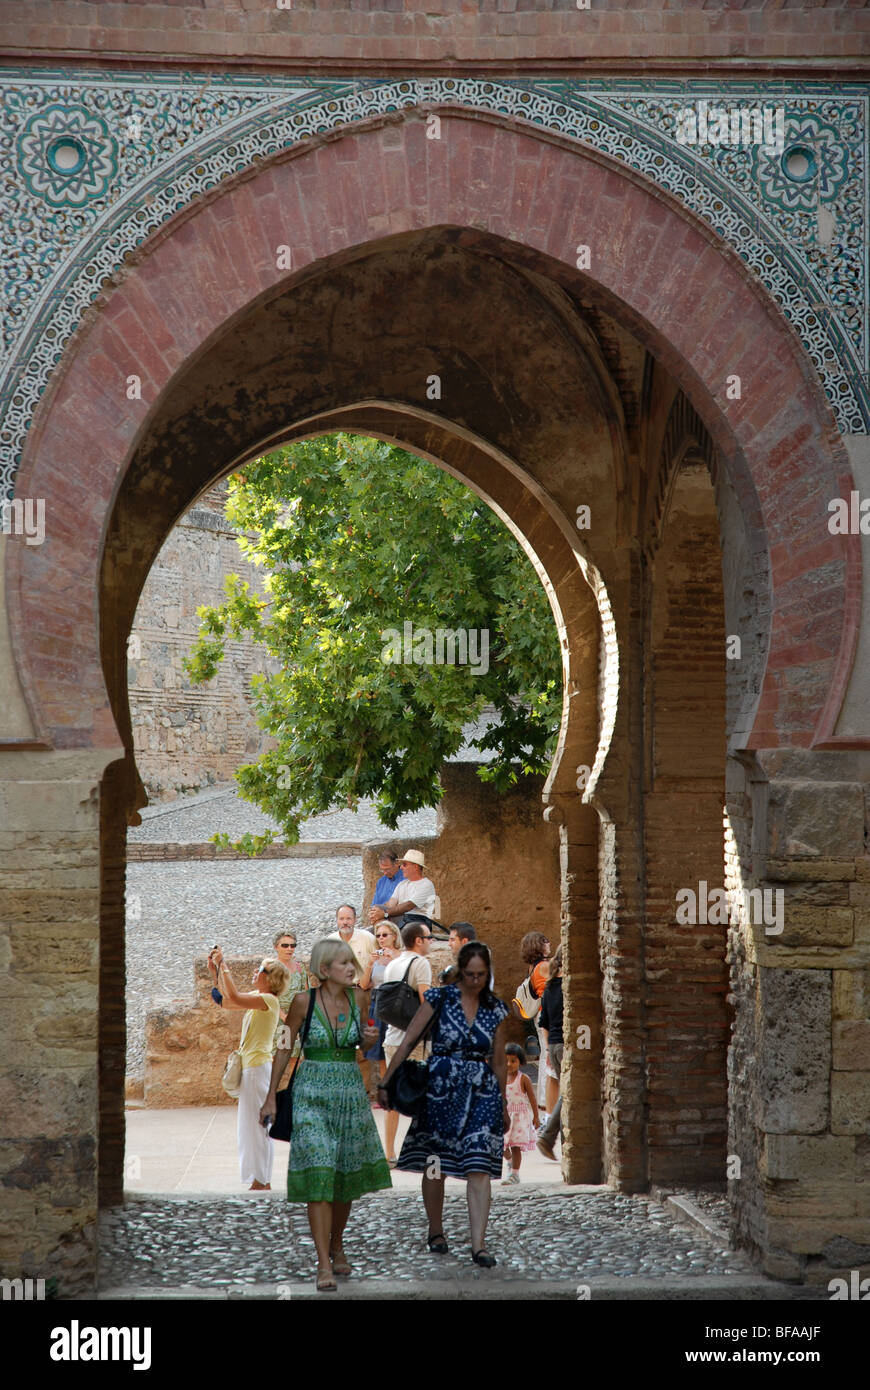 La façade orientale de la Puerta del Vino (La Porte du Vin), le Palais de l'Alhambra, Grenade, Andalousie, Espagne Banque D'Images